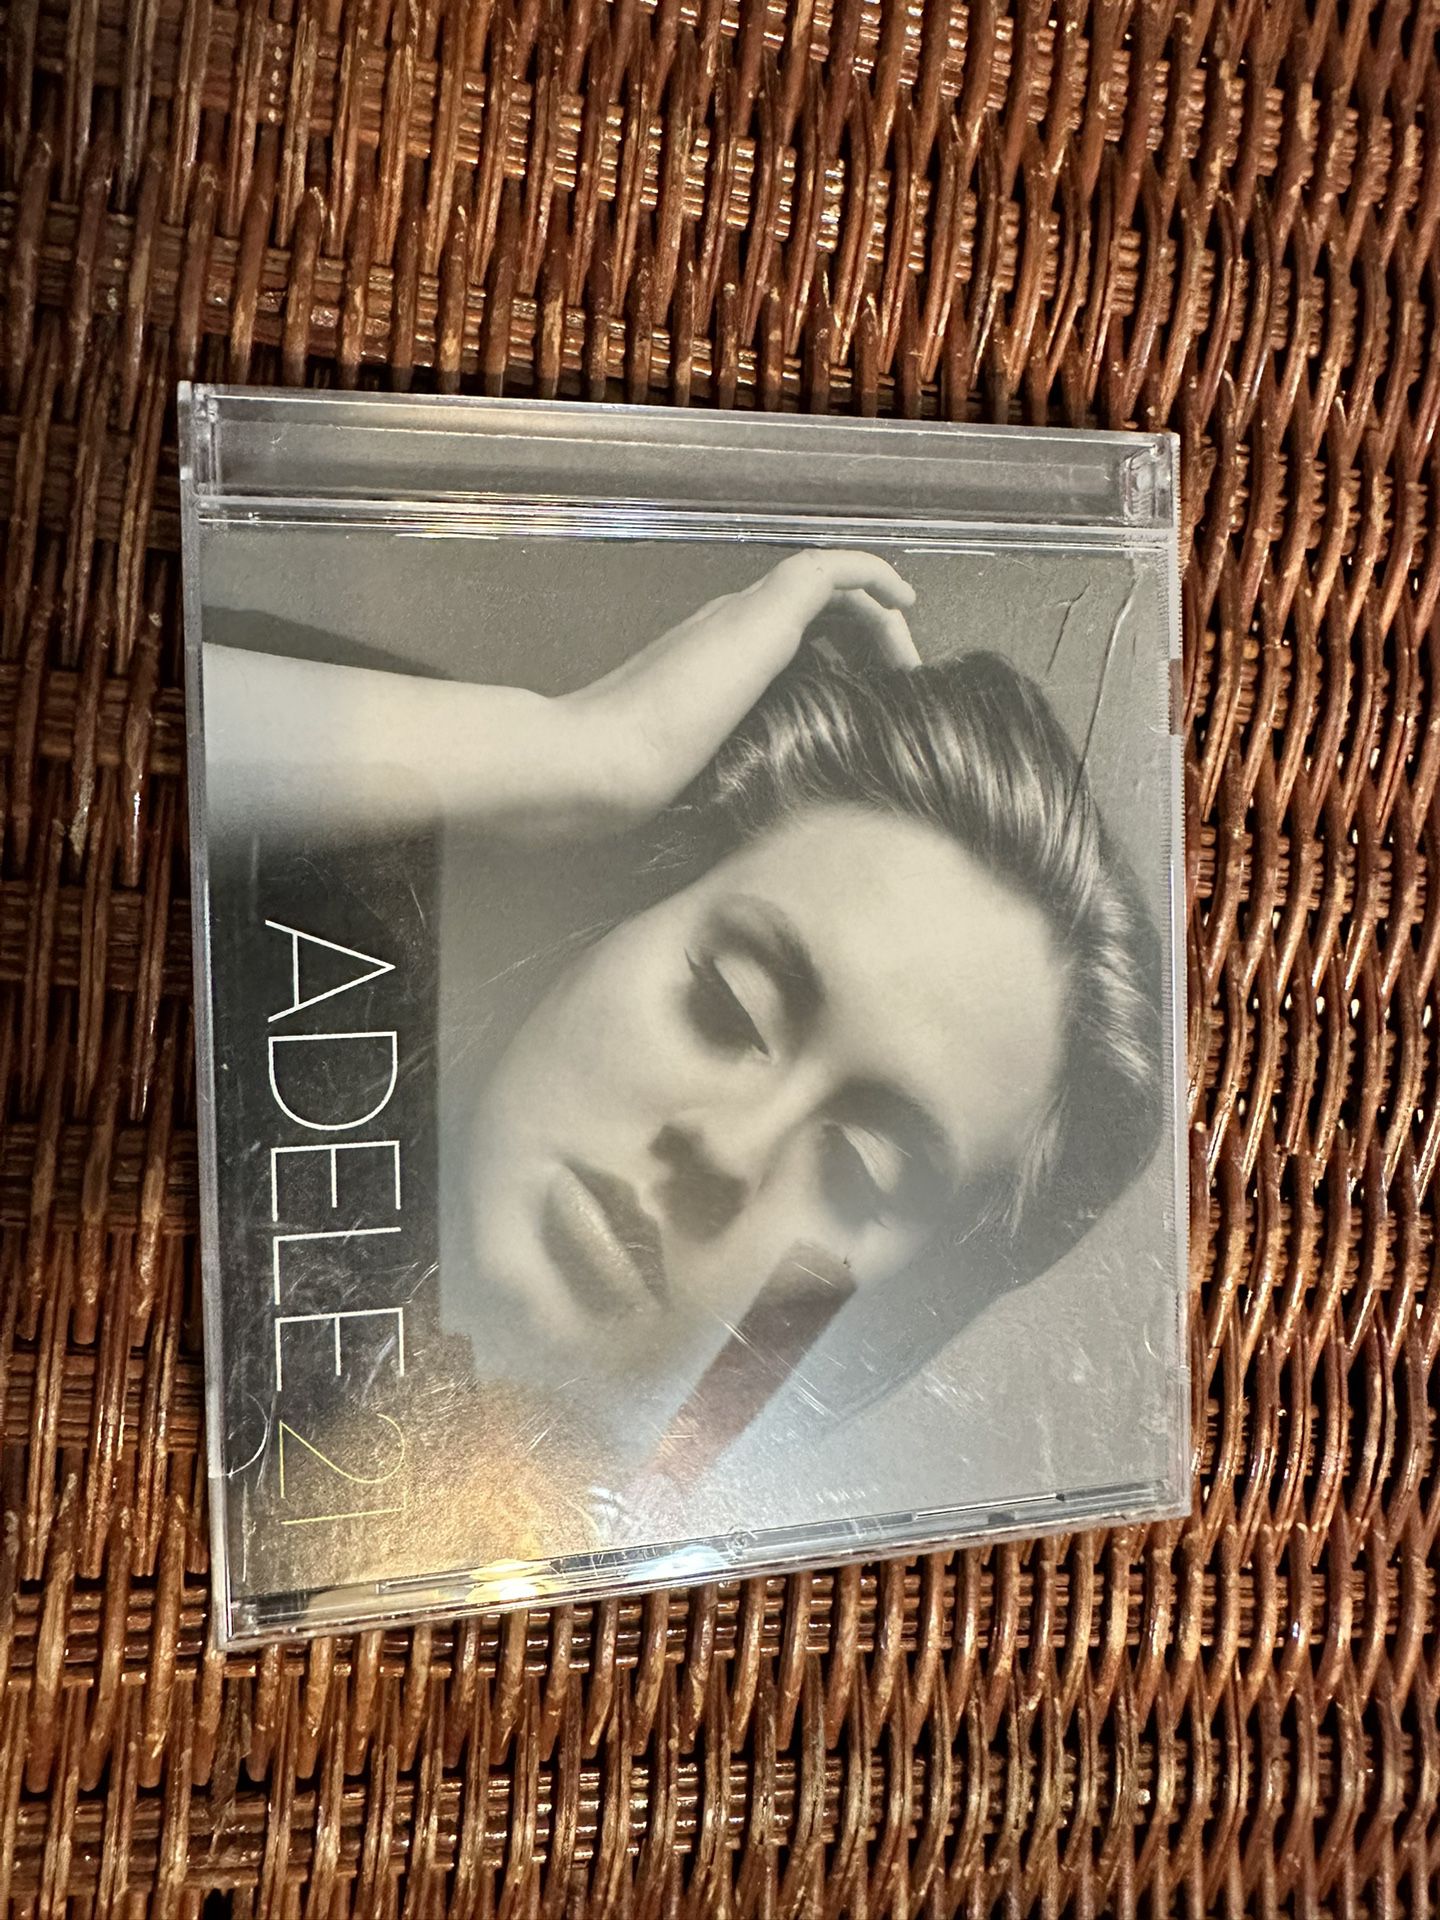 Adele CD